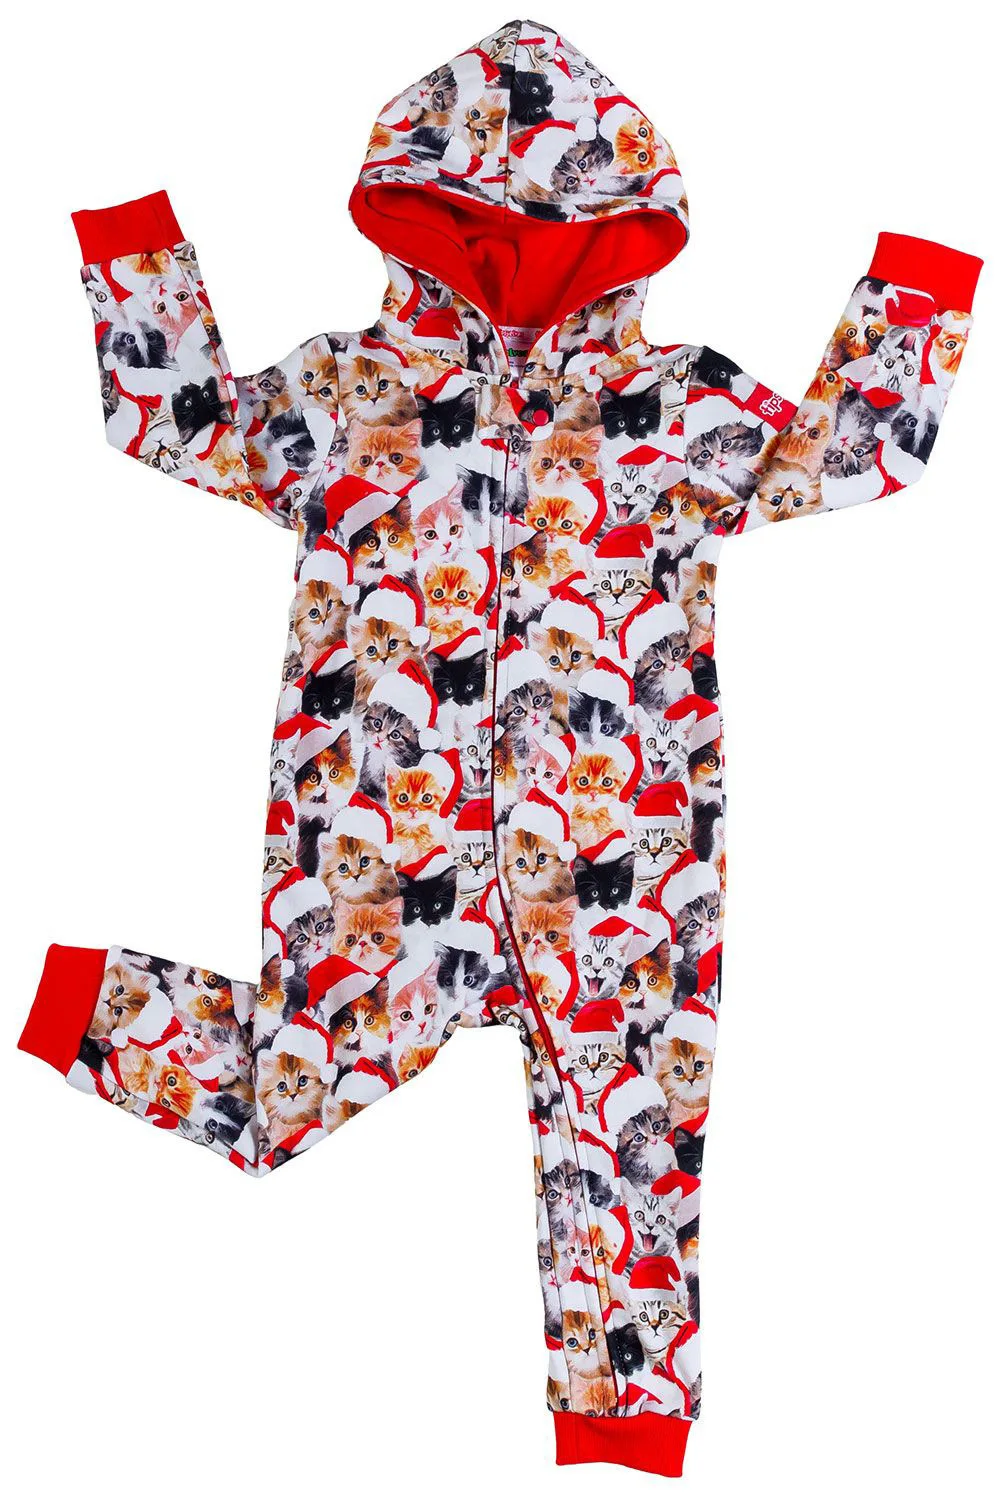 Рождественская цельнокроеная одежда для сна; одинаковые пижамы для всей семьи; одежда для сна для папы, мамы и ребенка; Рождественская одежда для сна